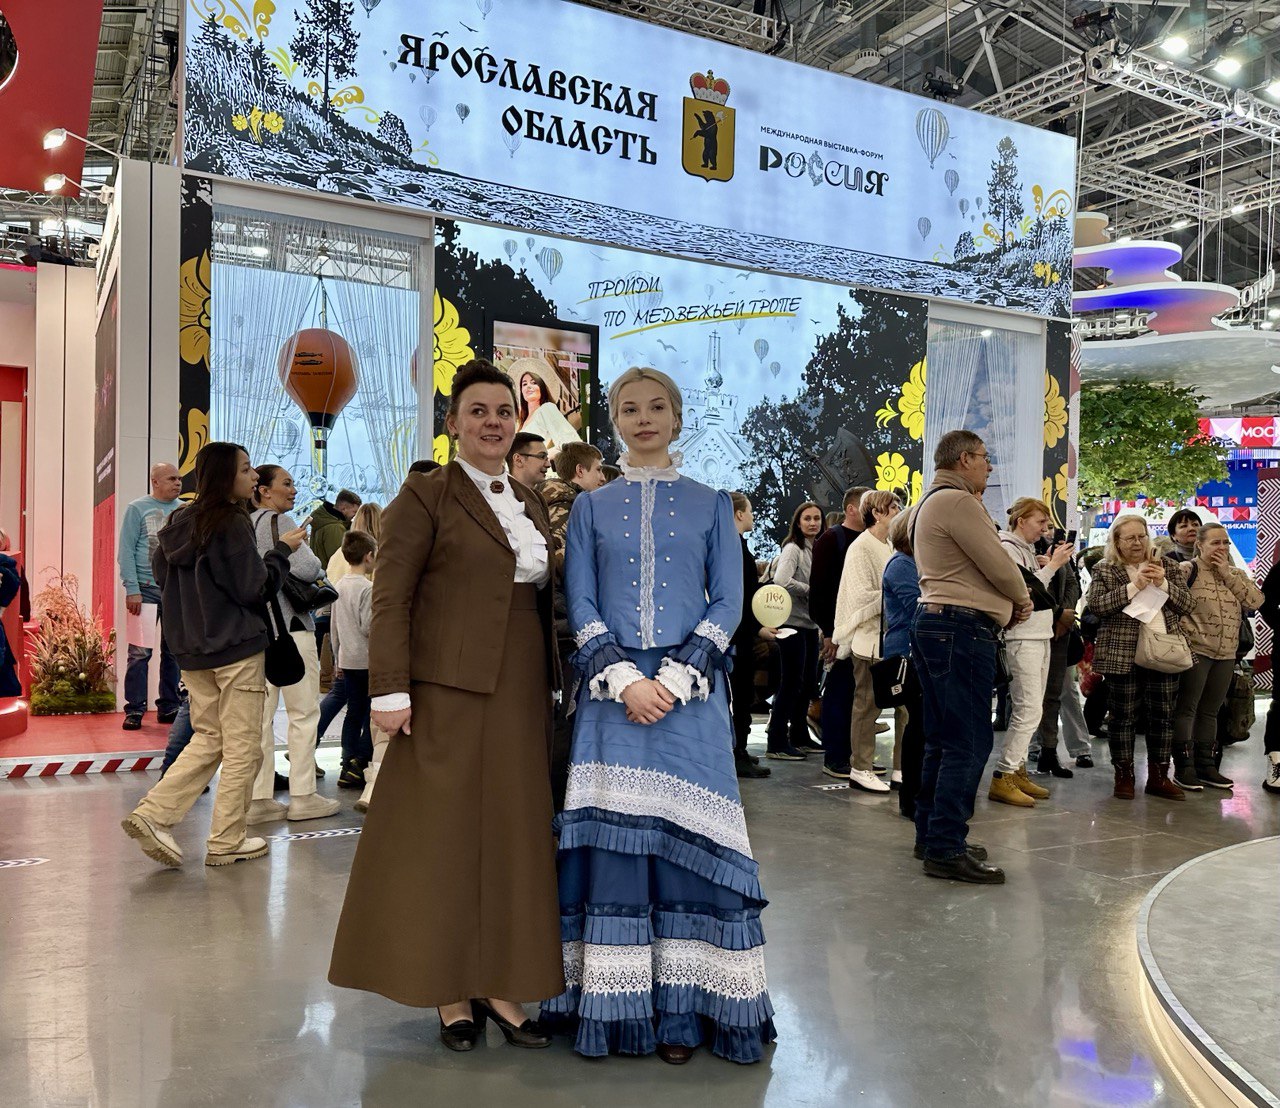 Музей-заповедник «Карабиха» был представлен на выставке «Россия» на ВДНХ